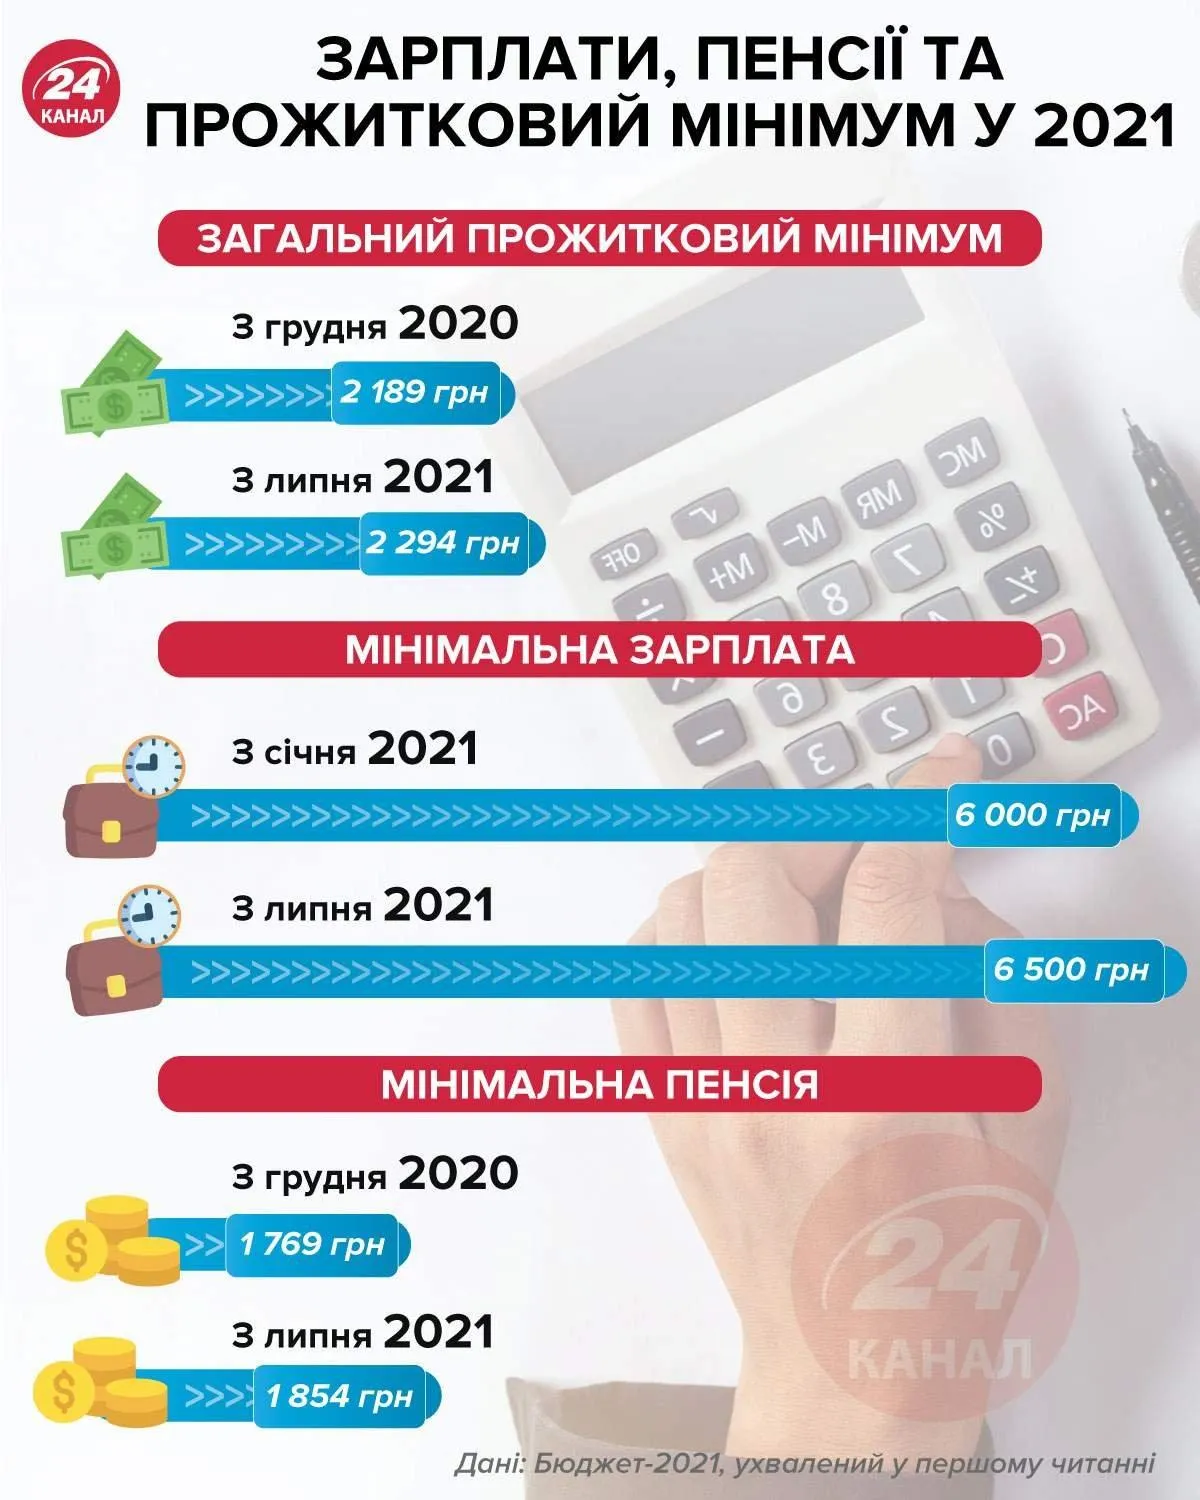 Зарплаты, пенсии и прожиточный минимум украинцев в 2021 году